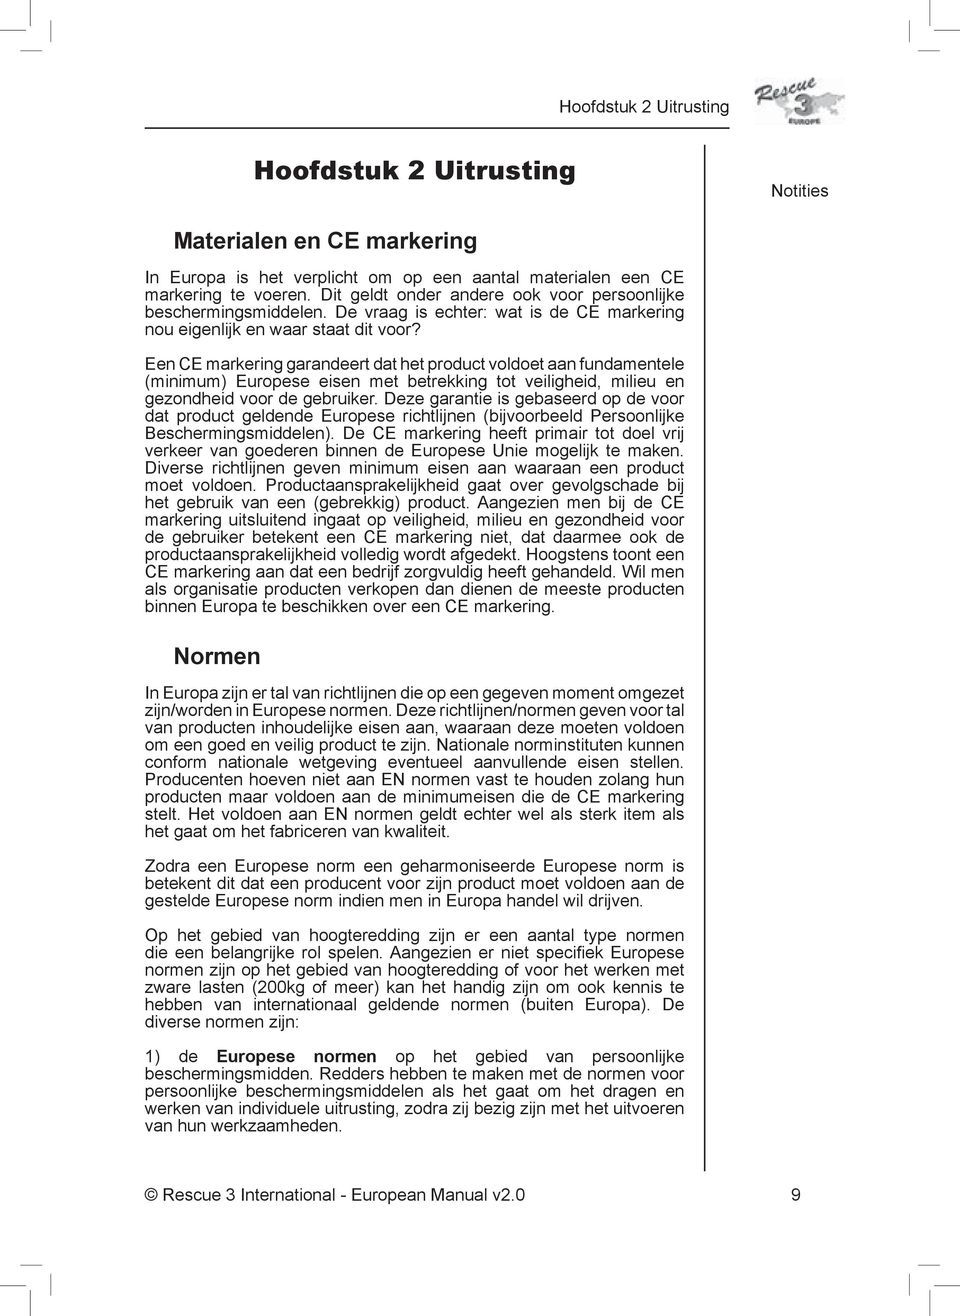 Een CE markering garandeert dat het product voldoet aan fundamentele (minimum) Europese eisen met betrekking tot veiligheid, milieu en gezondheid voor de gebruiker.